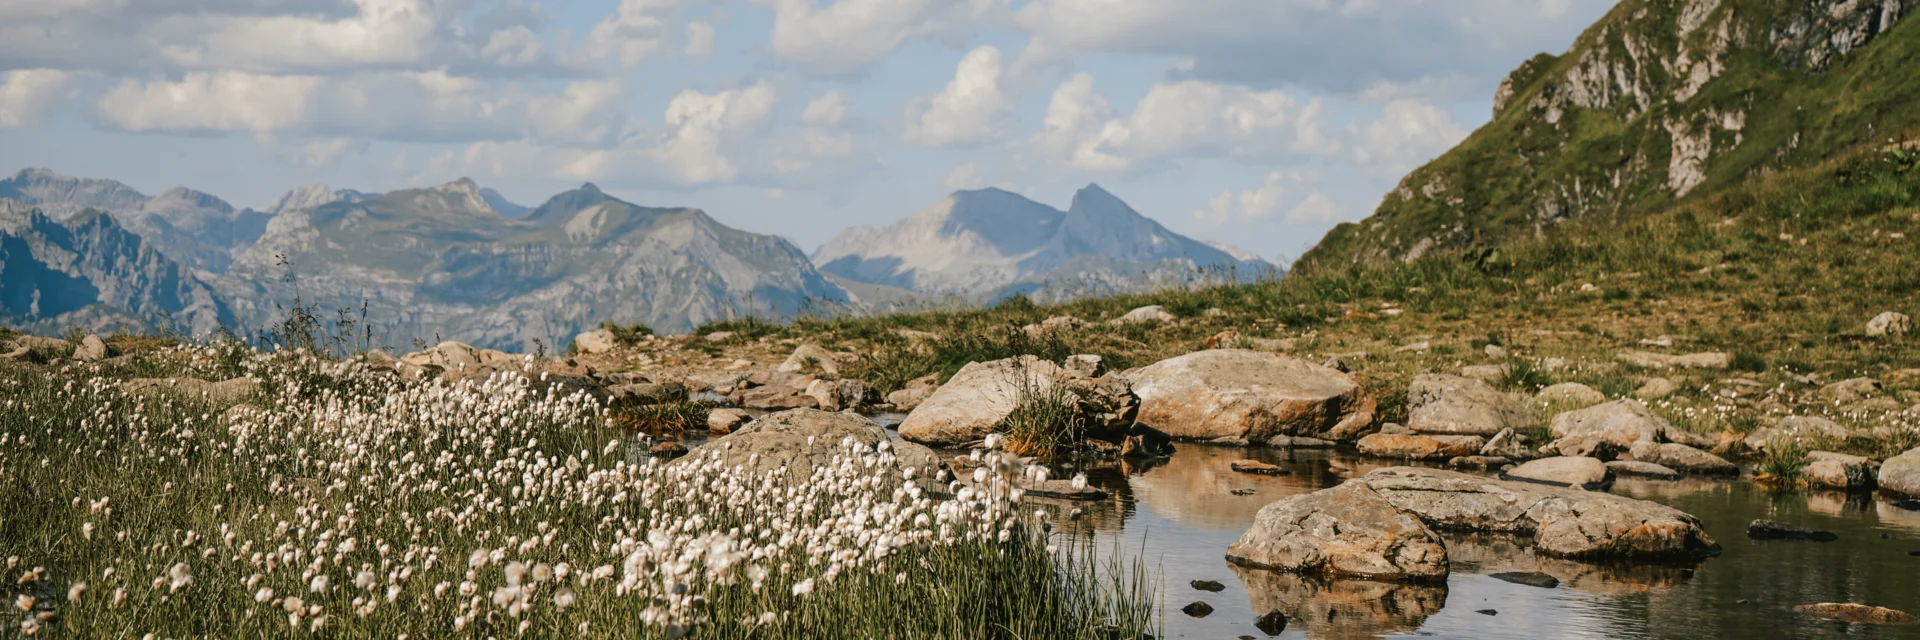 Die Natur an einem Bergsee auf 2.000 Metern Seehöhe am Hochjoch in der Silvretta Montafon. | © Silvretta Montafon - Vanessa Strauch